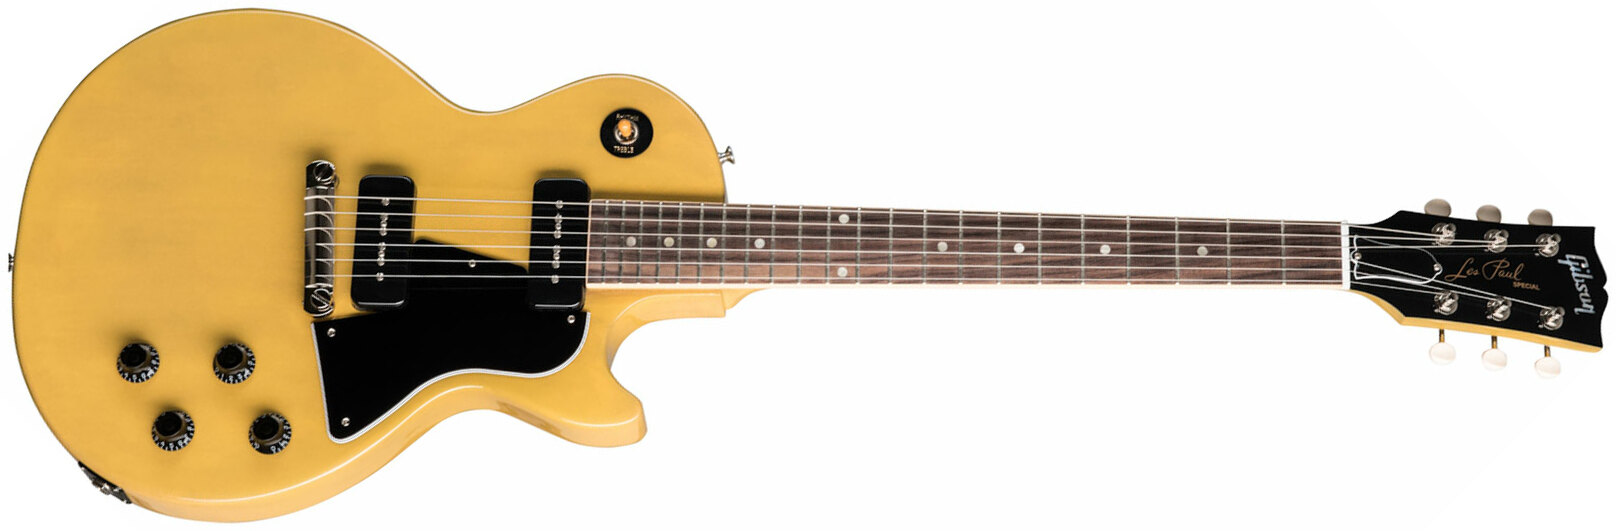 Gibson Les Paul Special Original 2p90 Ht Rw - Tv Yellow - Enkel gesneden elektrische gitaar - Main picture